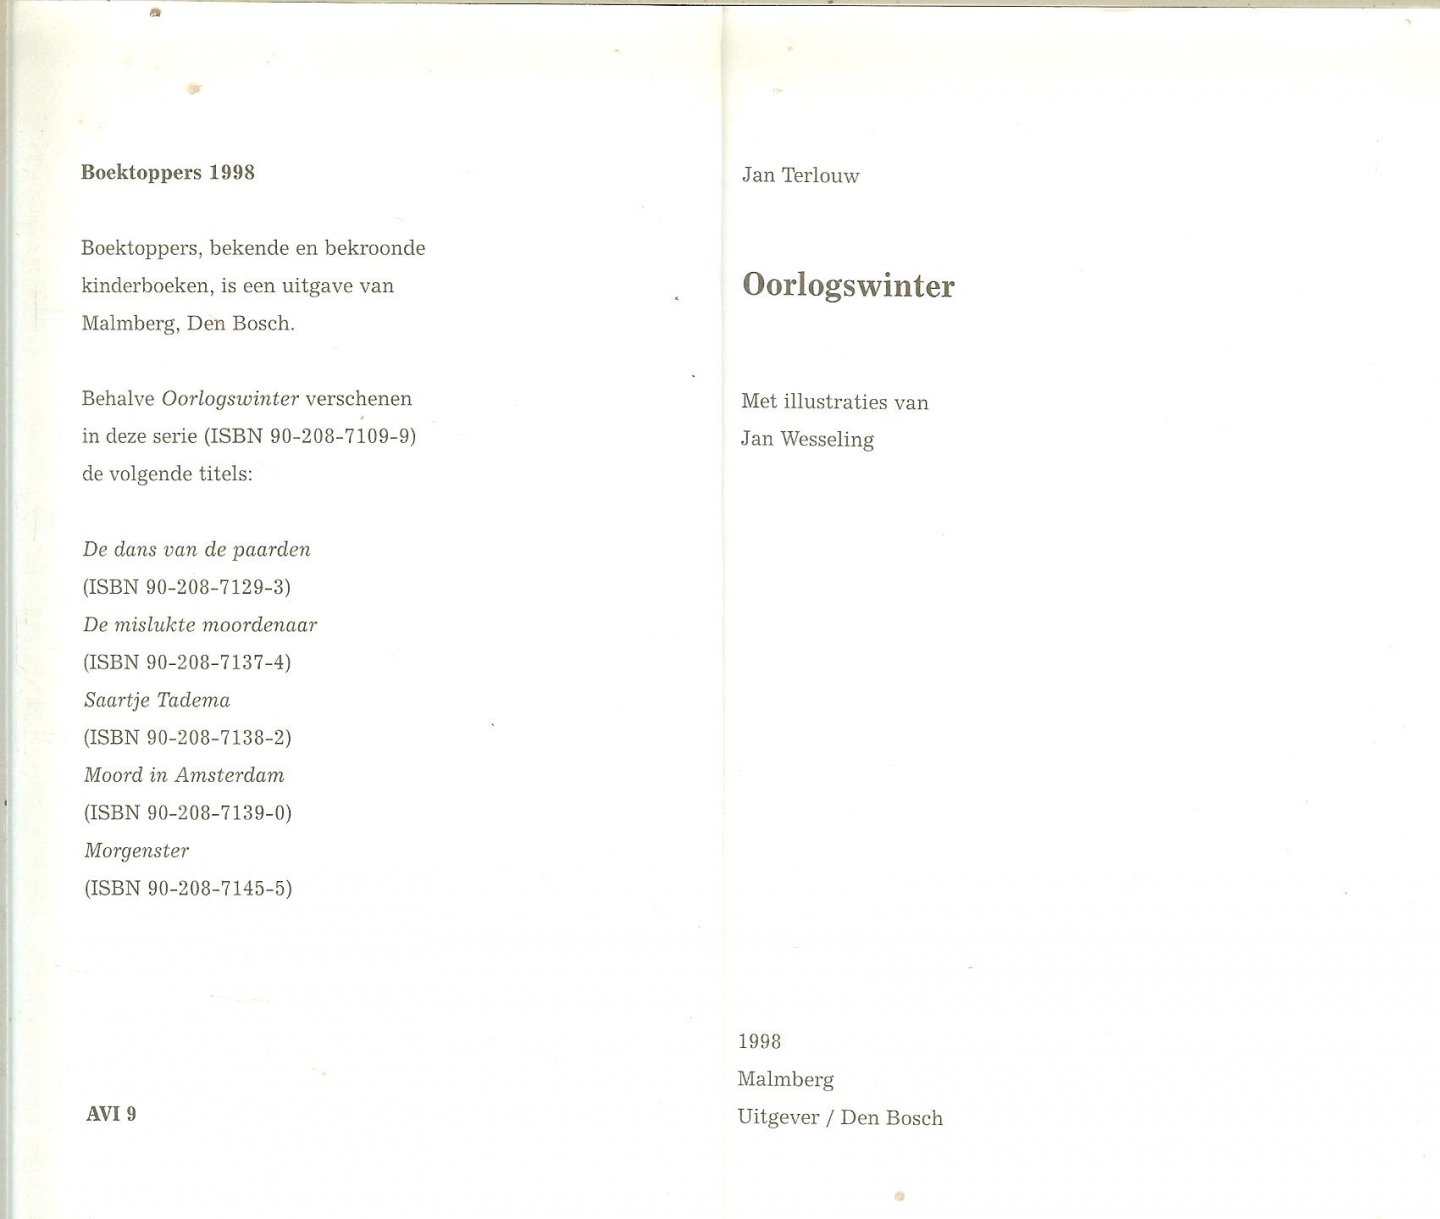 Terlouw, Jan  ..  Met illustraties van Jan Wesseling - Oorlogswinter  .. Bekroond gouden griffel 1973